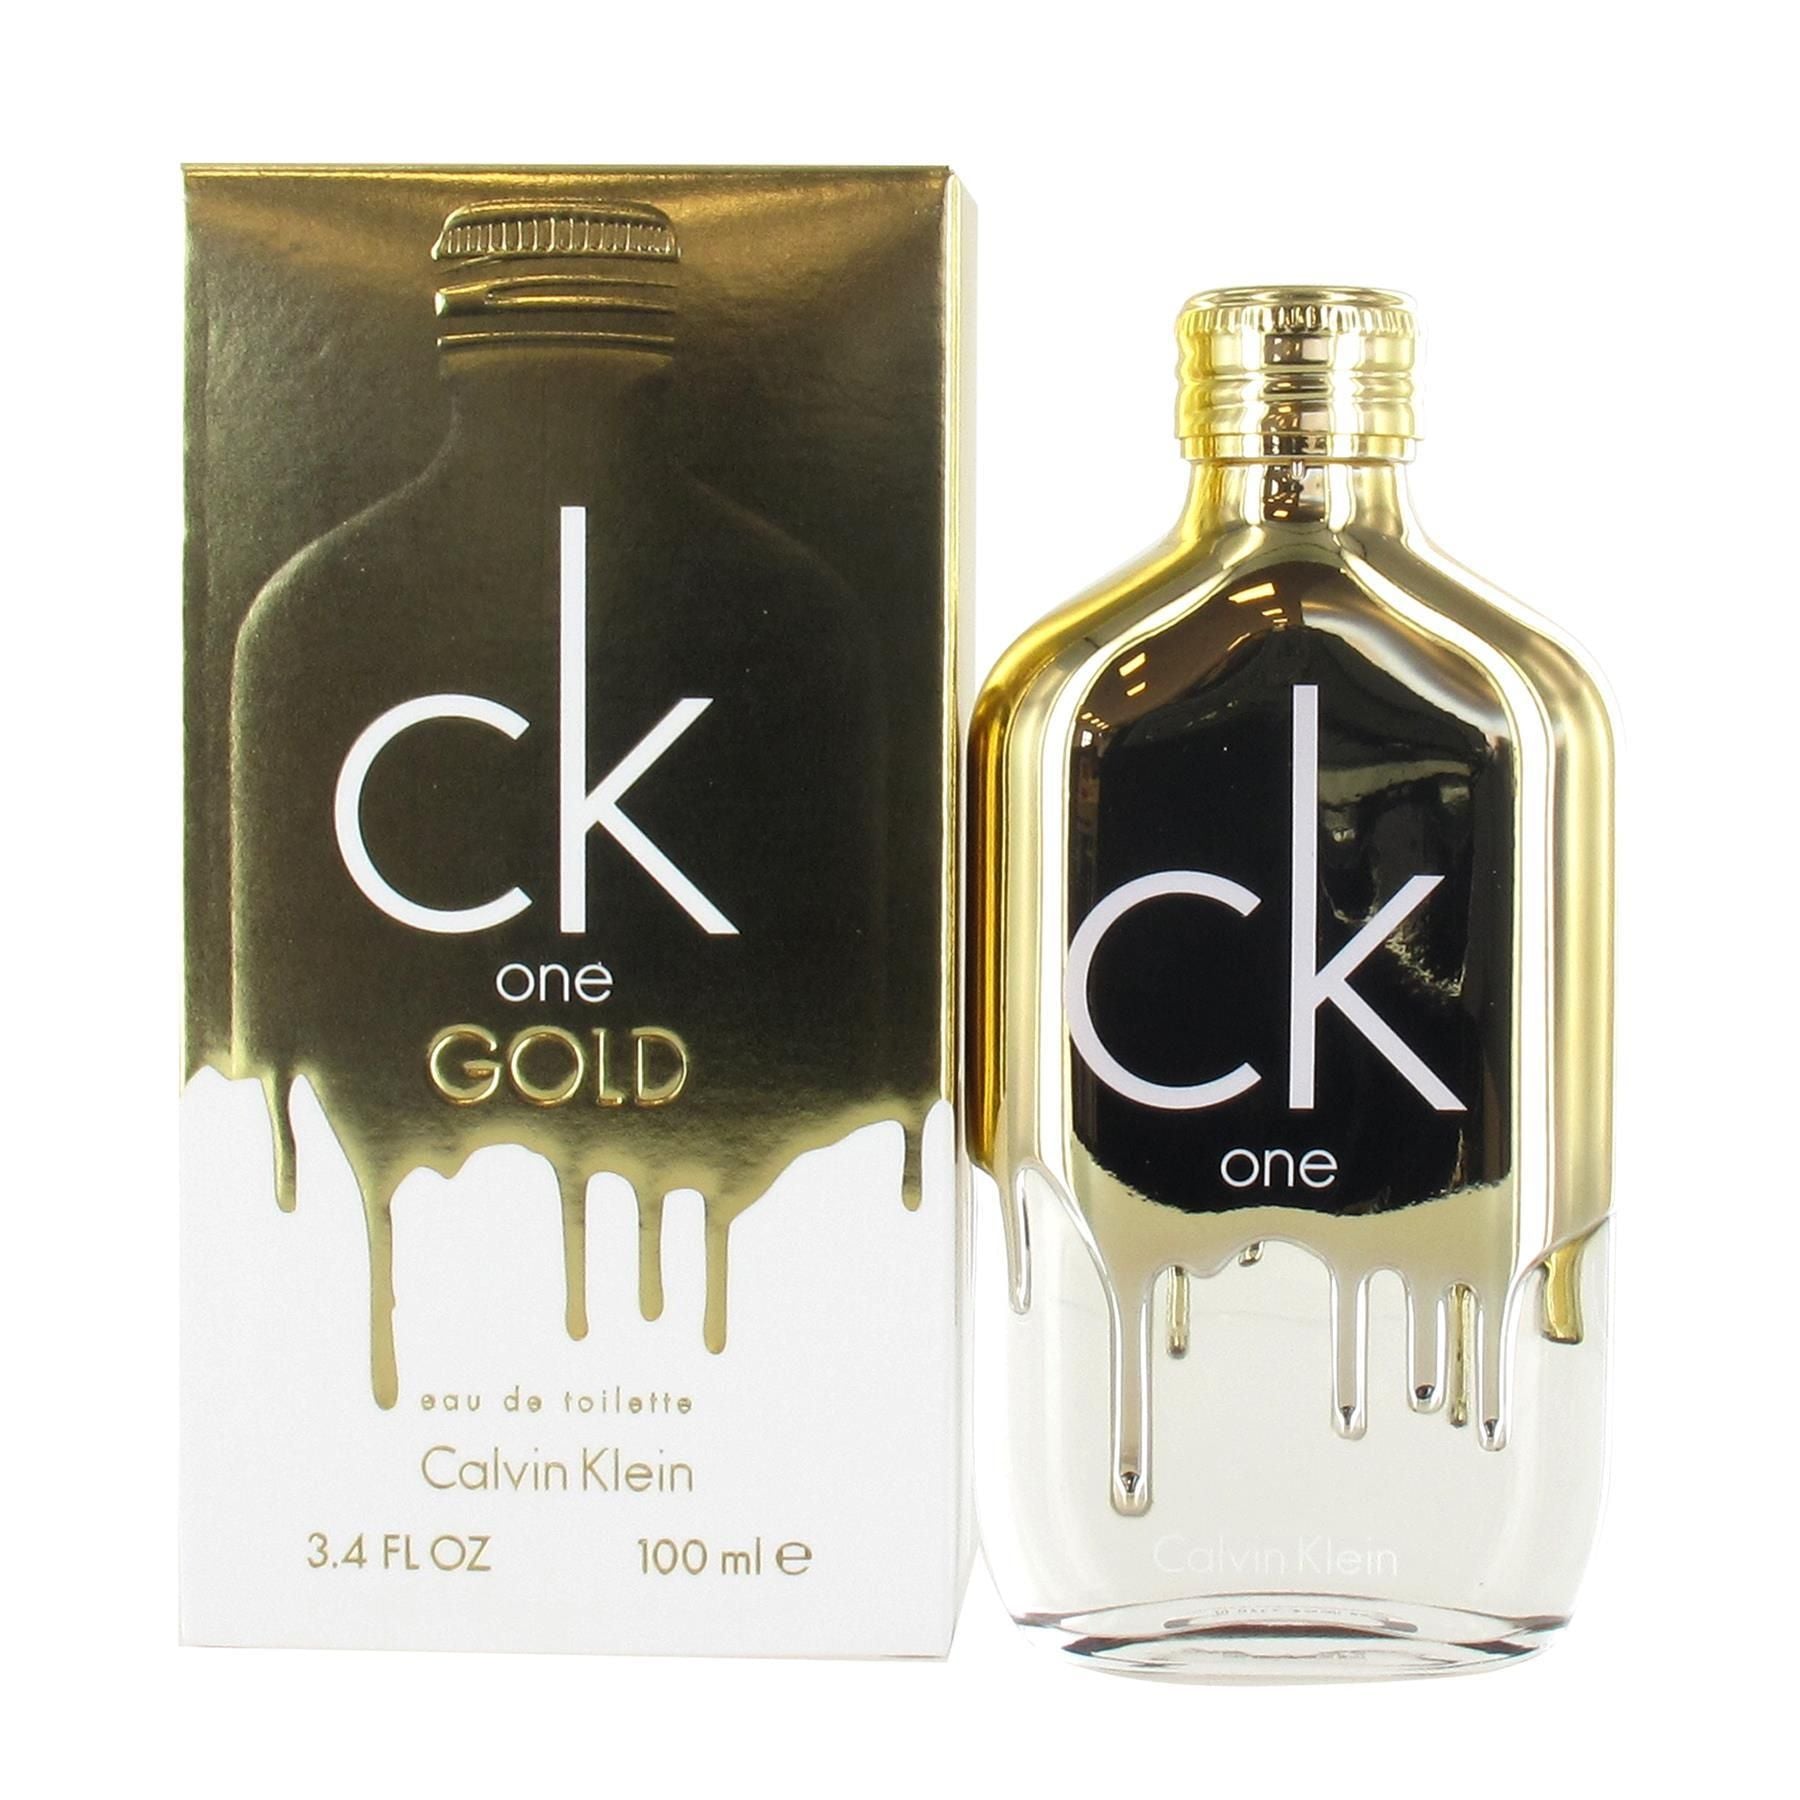 Calvin Klein CK One GOLD EDT 100ml